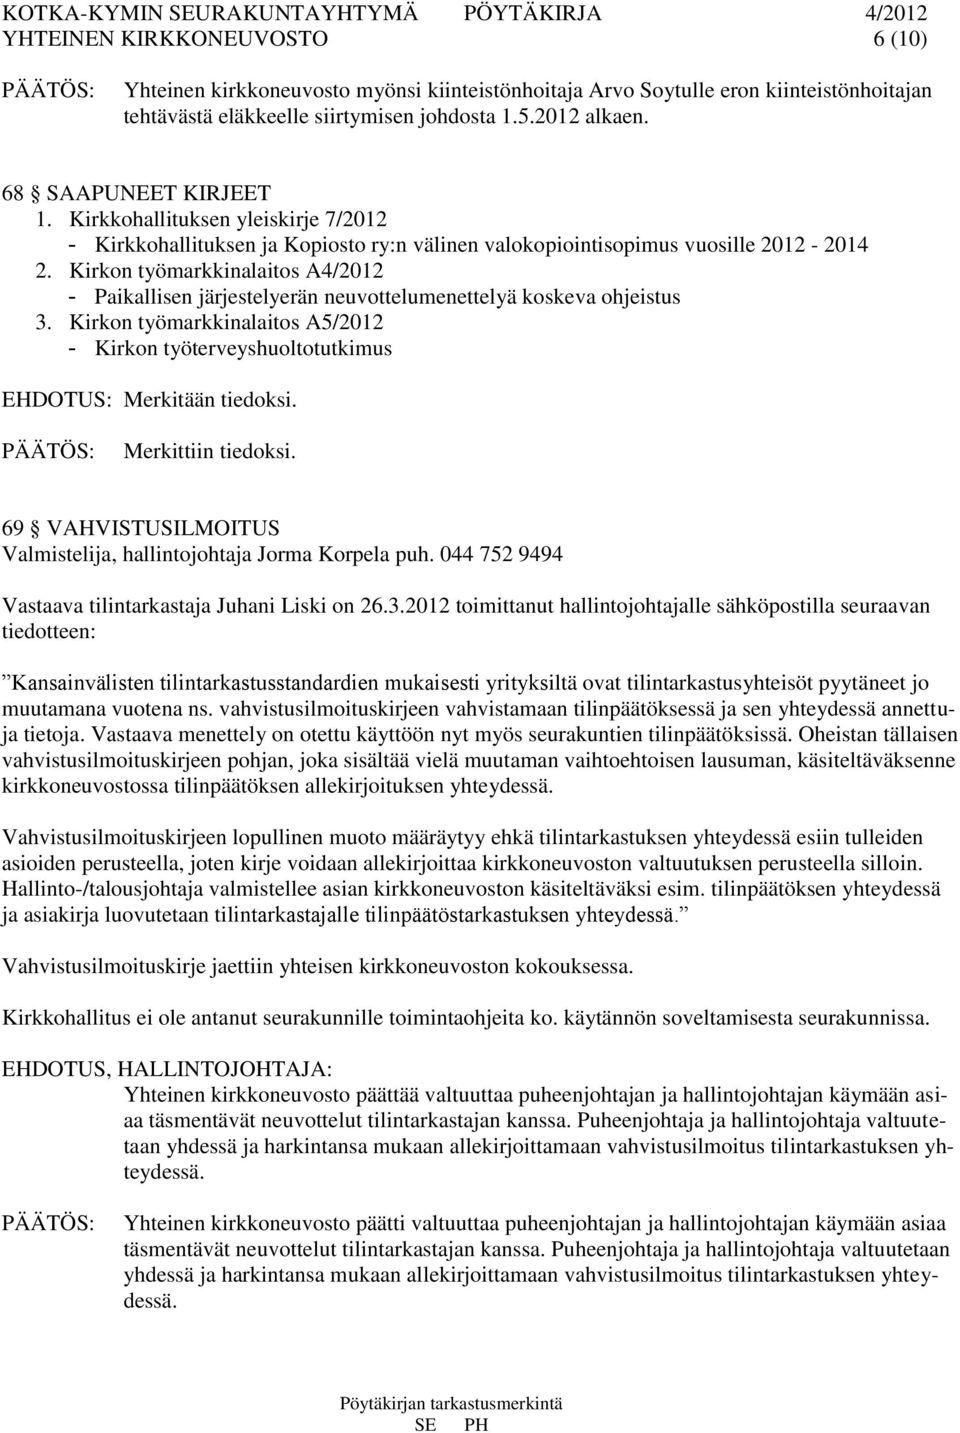 Kirkon työmarkkinalaitos A4/2012 - Paikallisen järjestelyerän neuvottelumenettelyä koskeva ohjeistus 3. Kirkon työmarkkinalaitos A5/2012 - Kirkon työterveyshuoltotutkimus EHDOTUS: Merkitään tiedoksi.